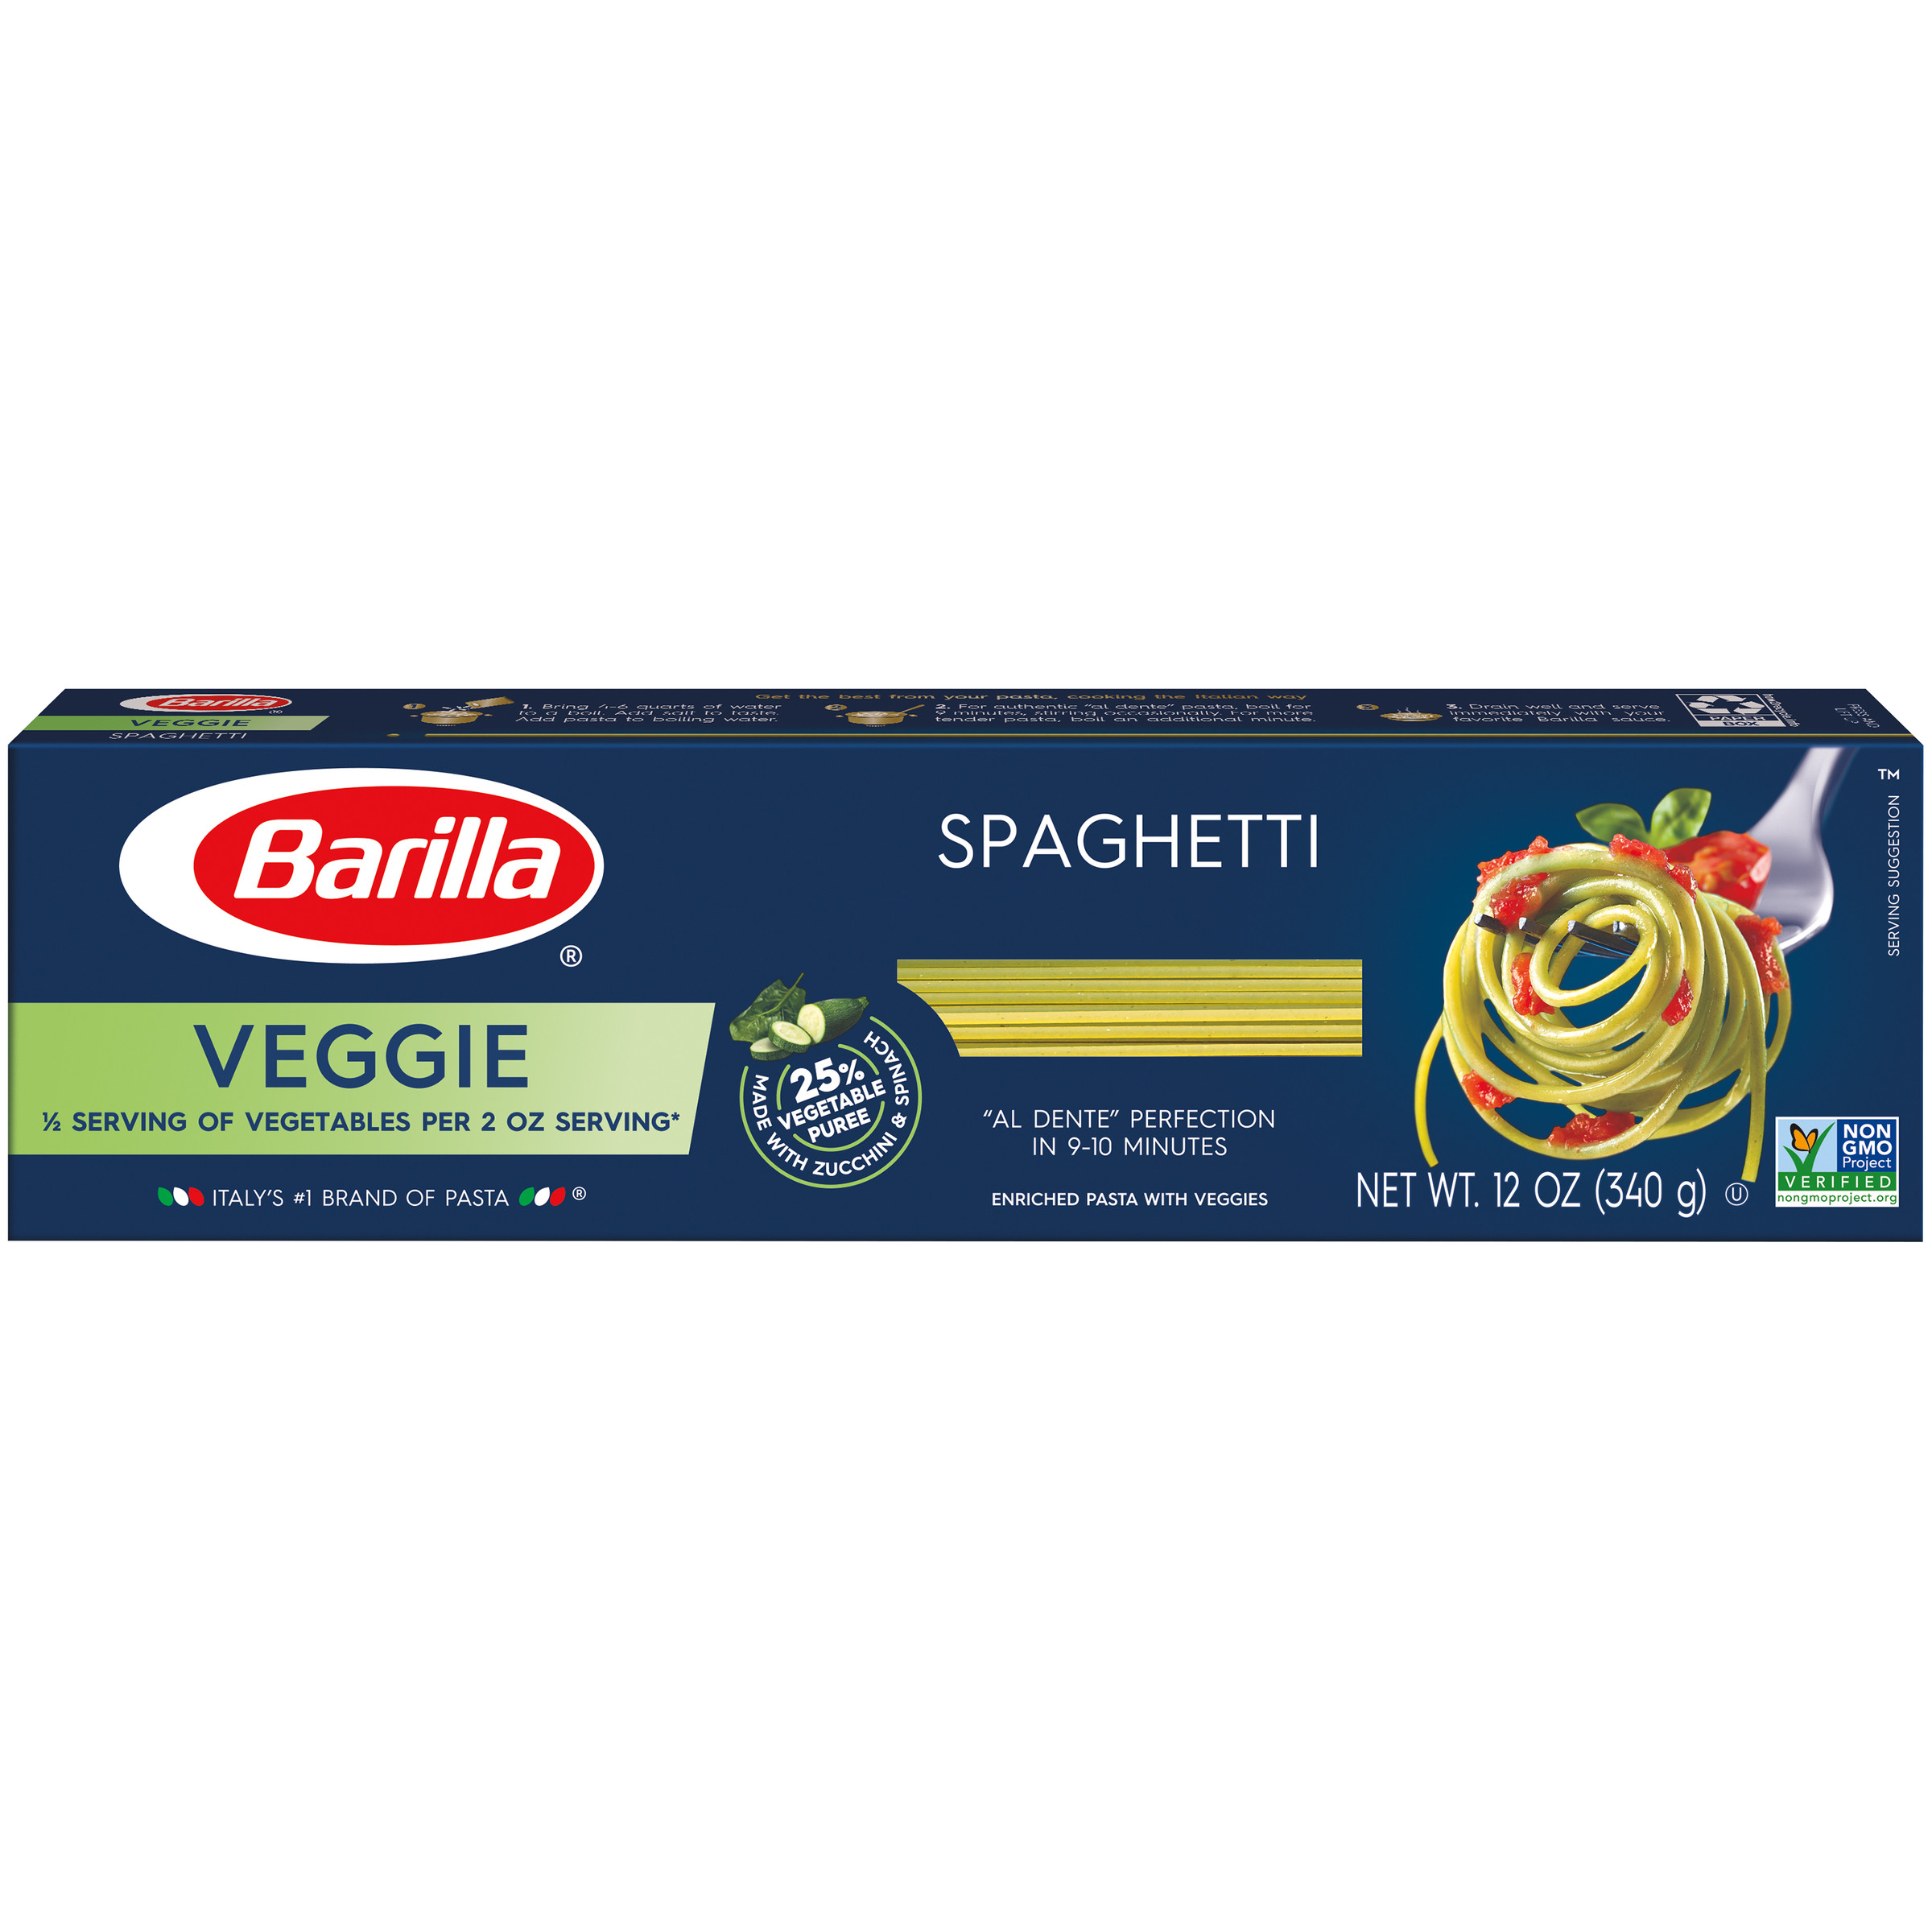 15 Recipes for Great Barilla Veggie Spaghetti